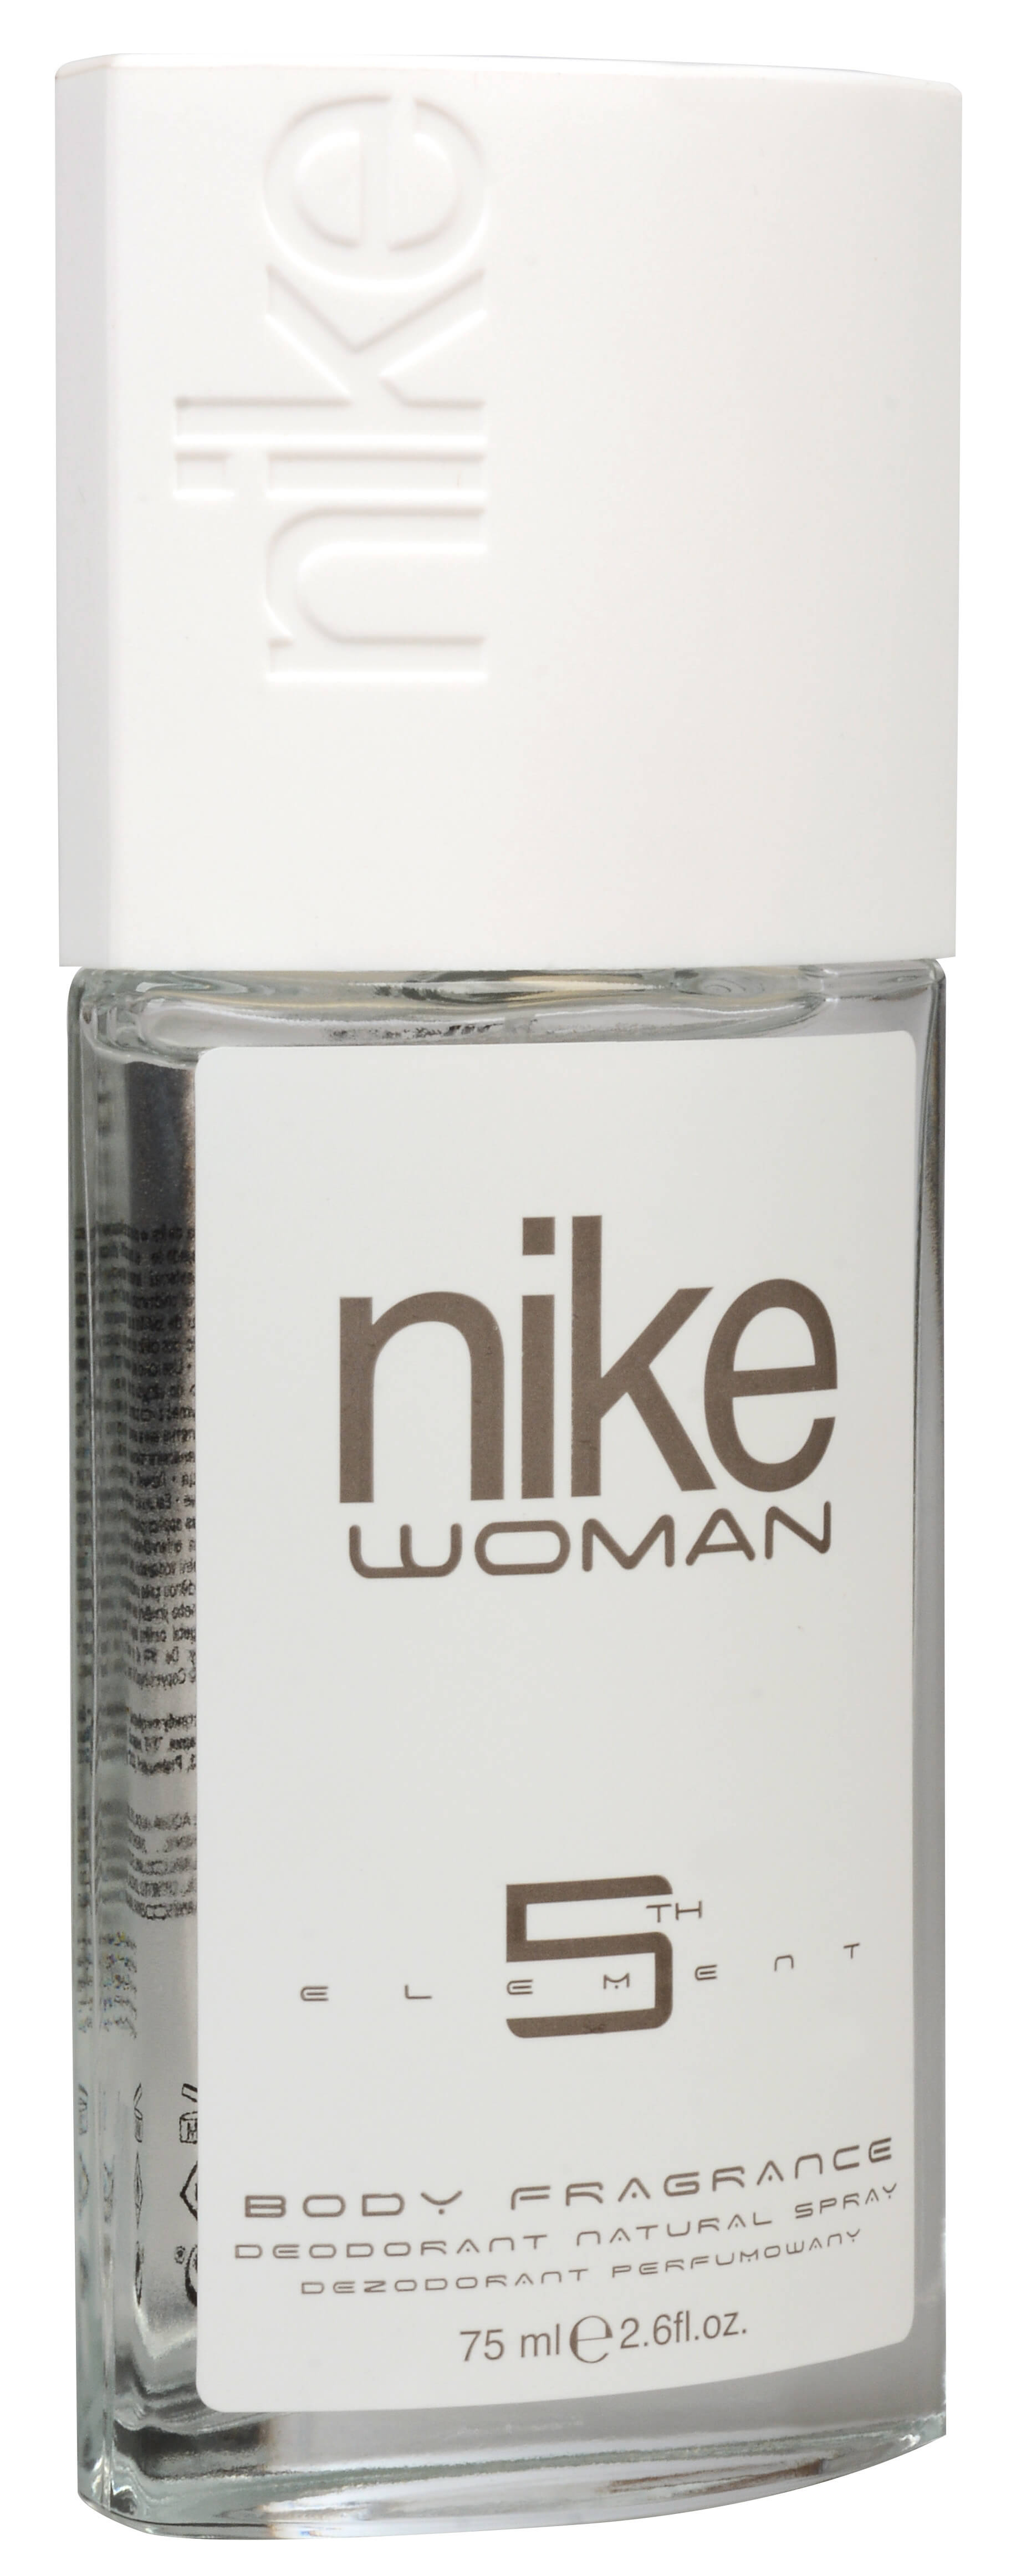 Nike 5th Element - dezodorant s rozprašovačom 75 ml